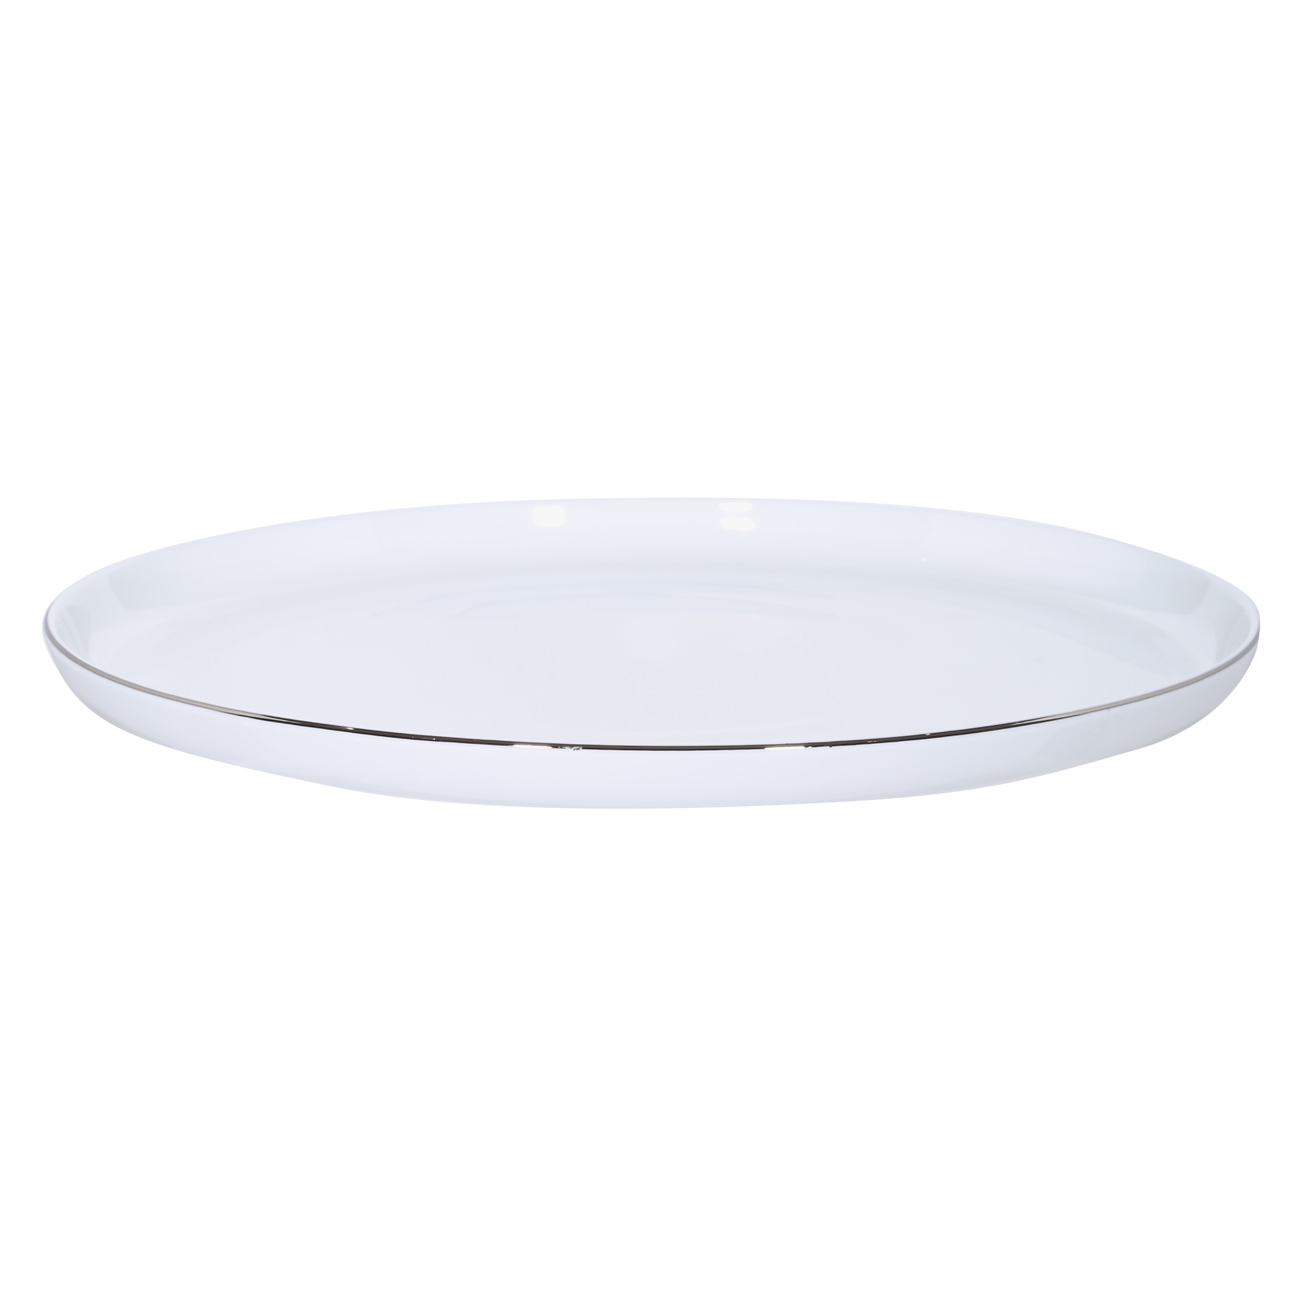 Тарелка обеденная, 26 см, фарфор F, белая, Ideal silver изображение № 2